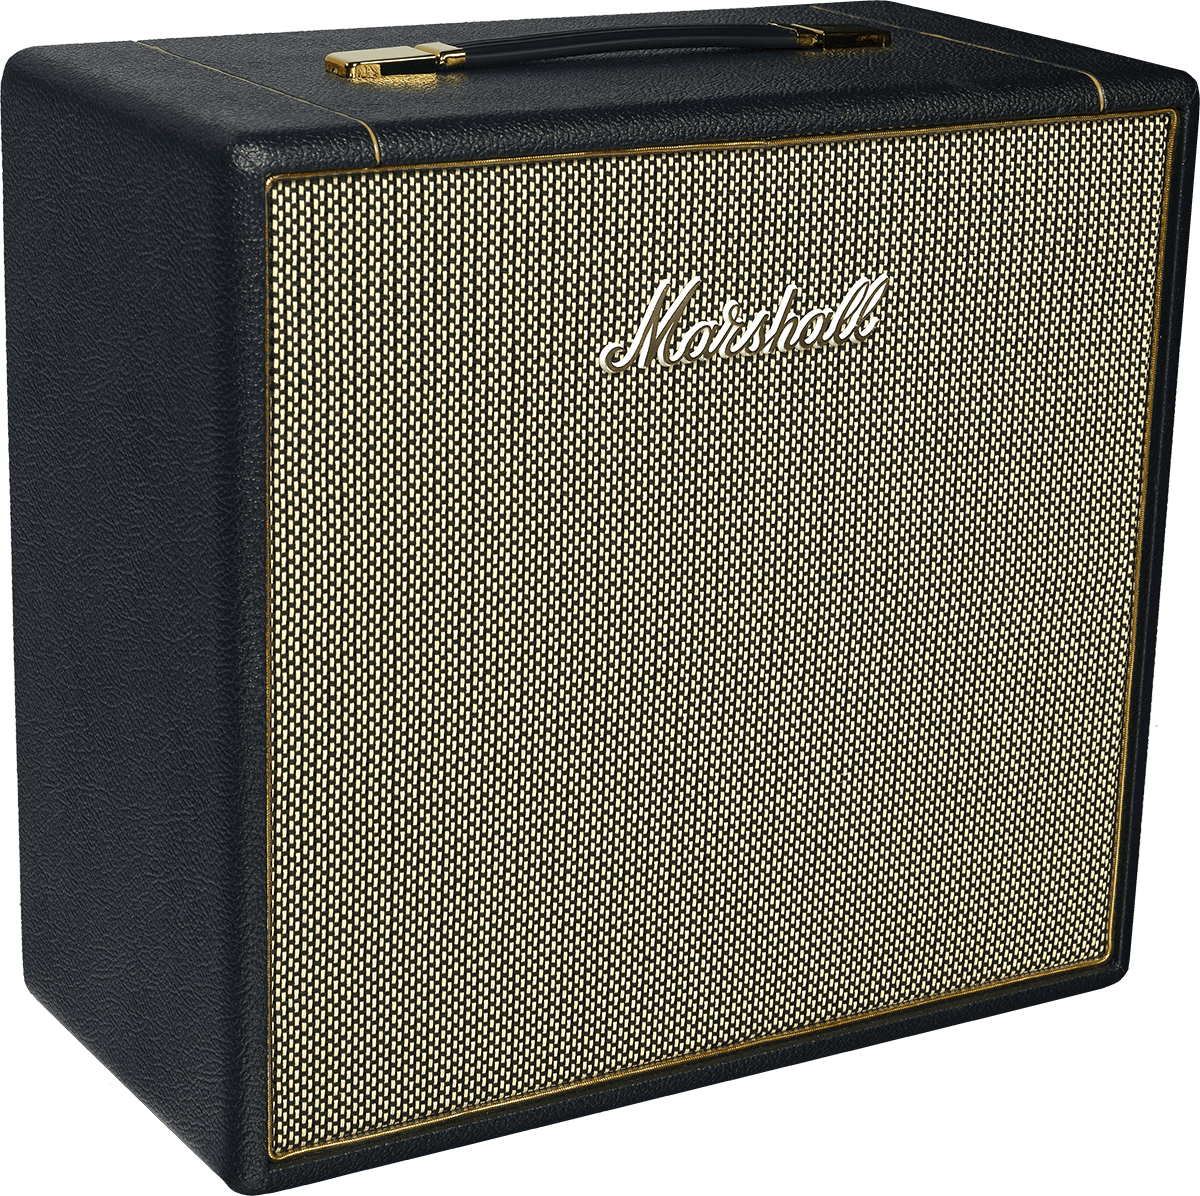 Marshall Studio Vintage 1x12 - Cabina amplificador para guitarra eléctrica - Variation 2